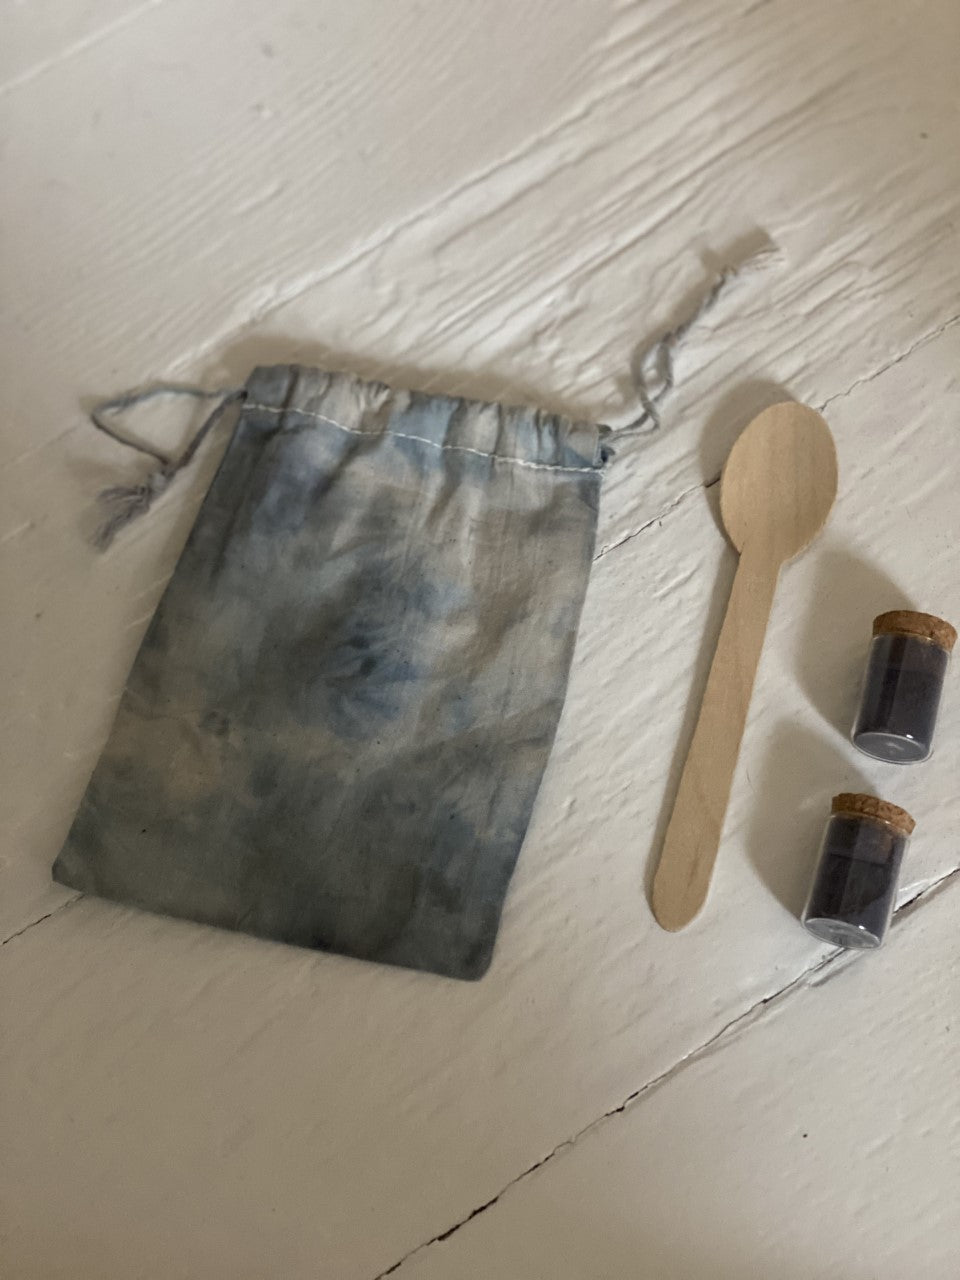 Ltd Small Diy Ice Dye Kit